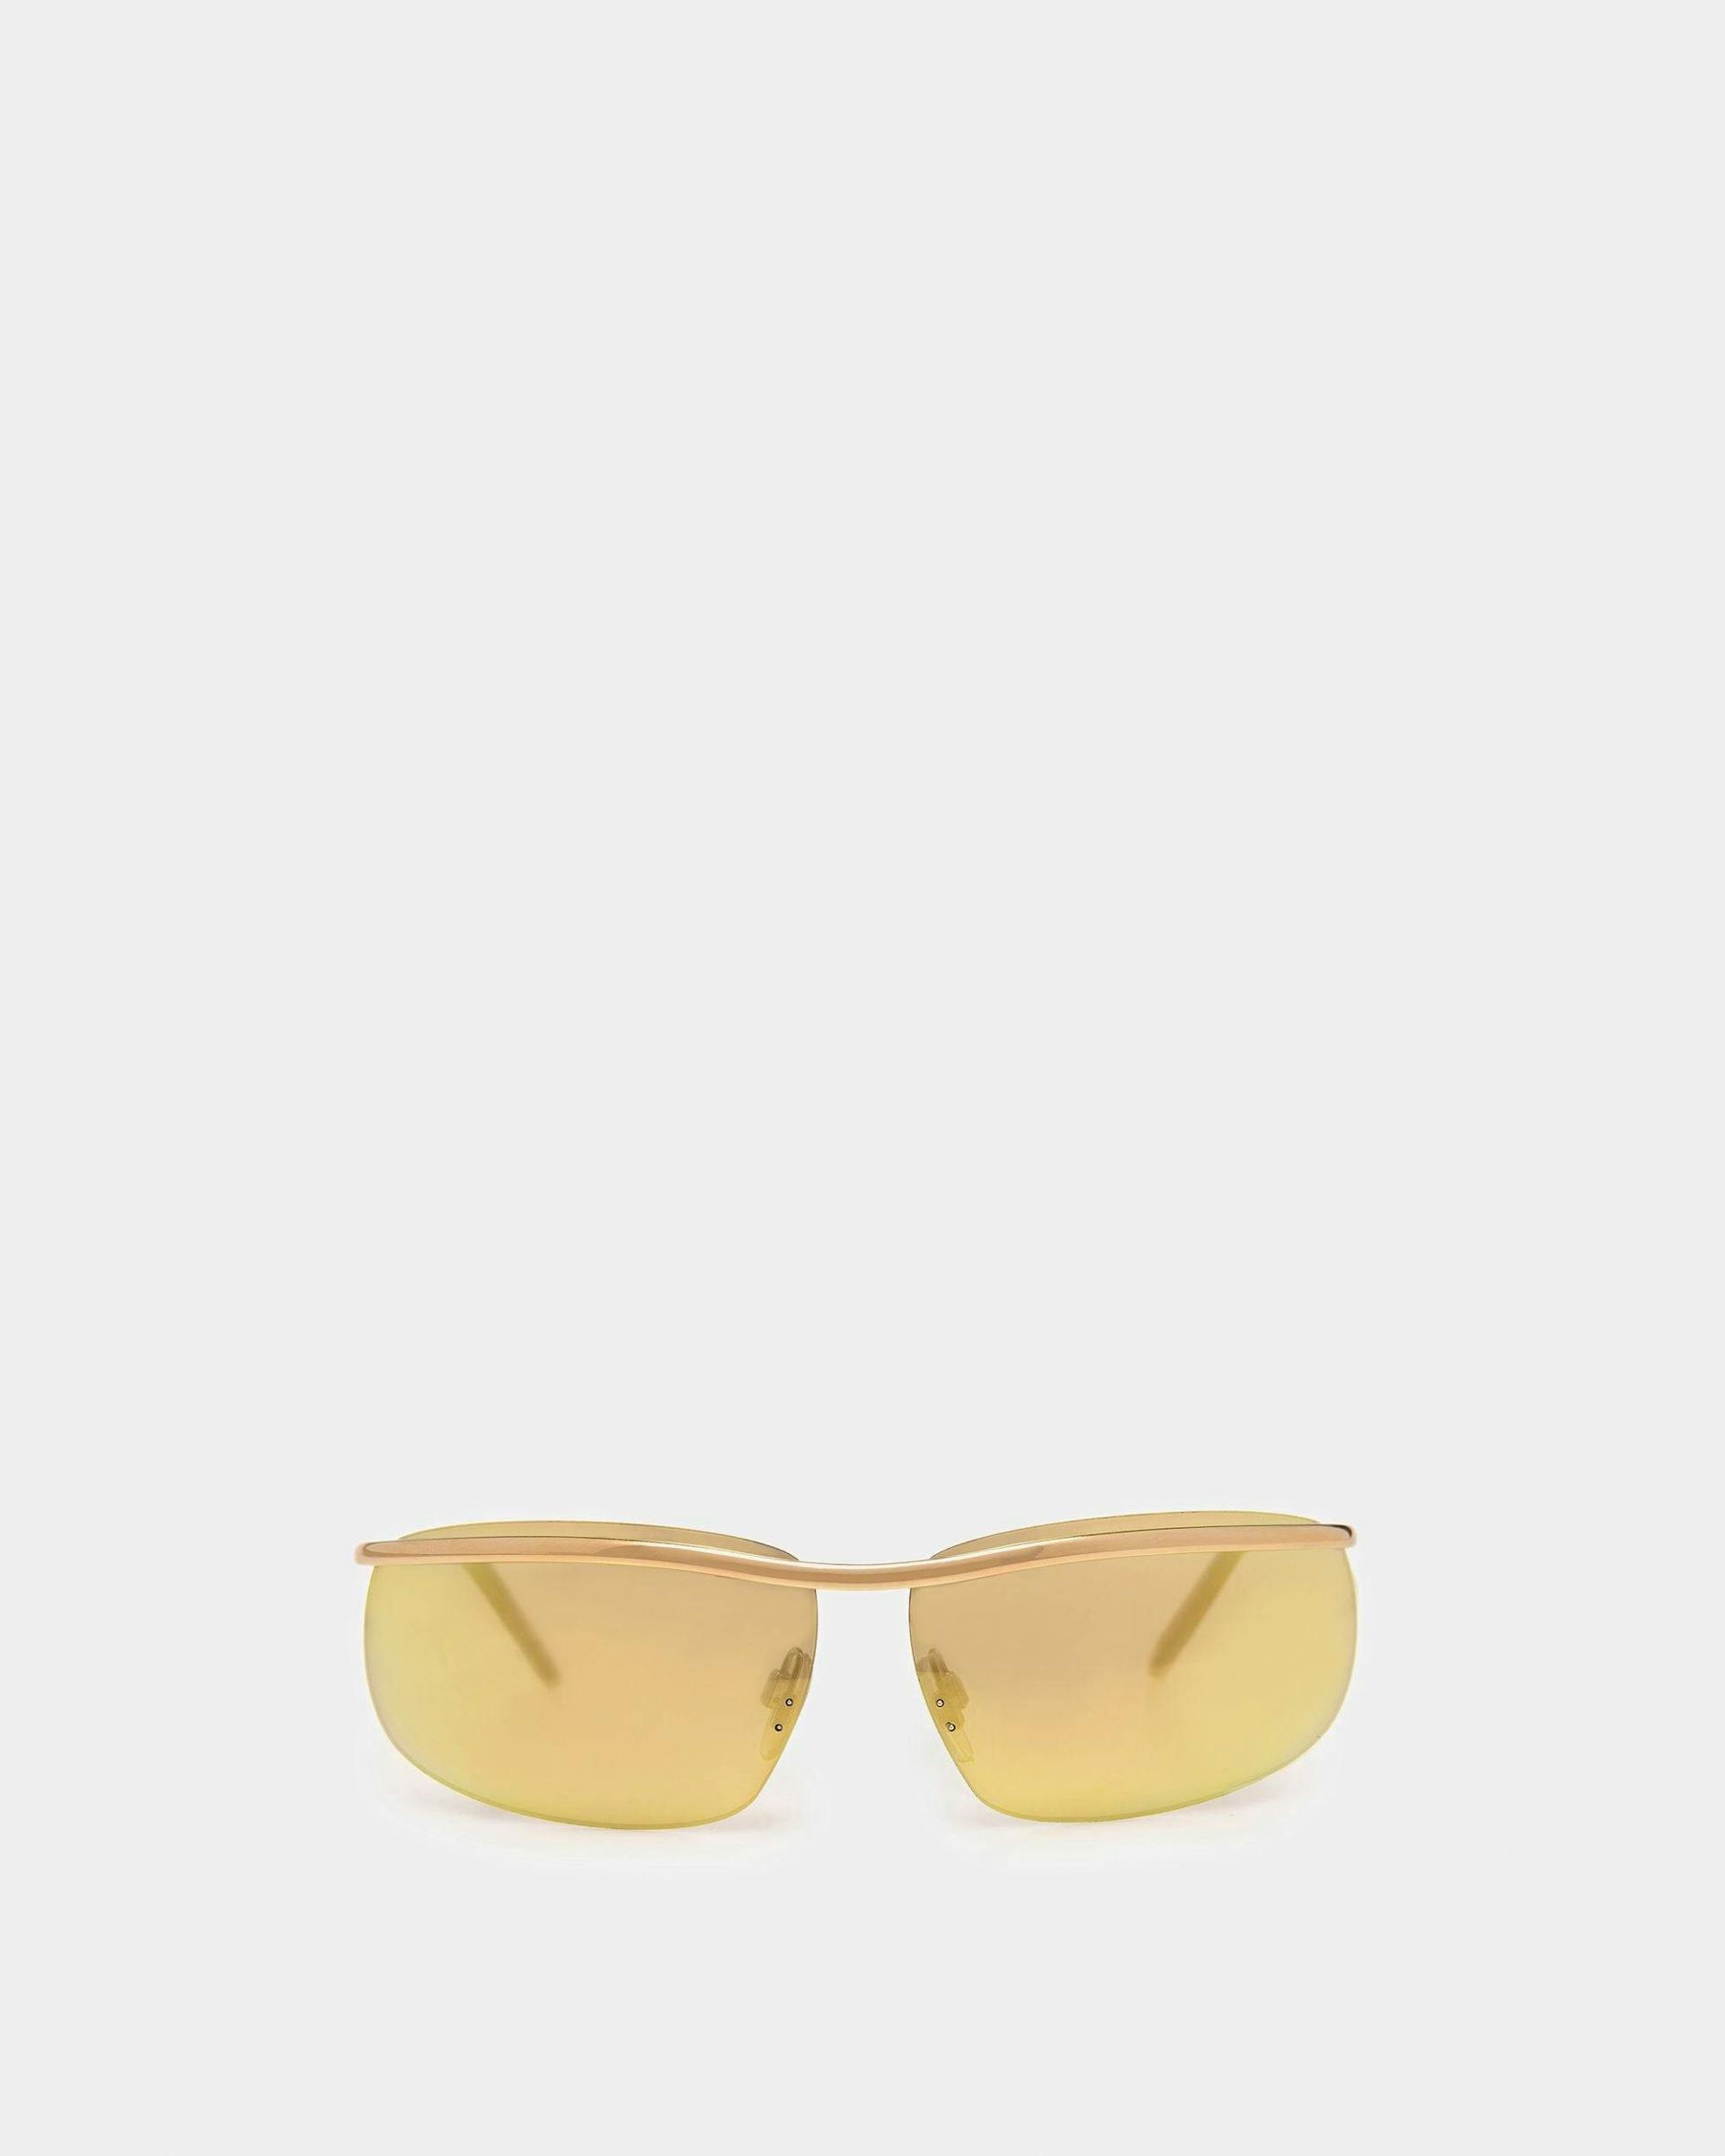 Shark Randlose Sonnenbrille In Glänzendem Goldfarbenen Metall Und Verspiegeltem Gold - OTHER - Bally - 01